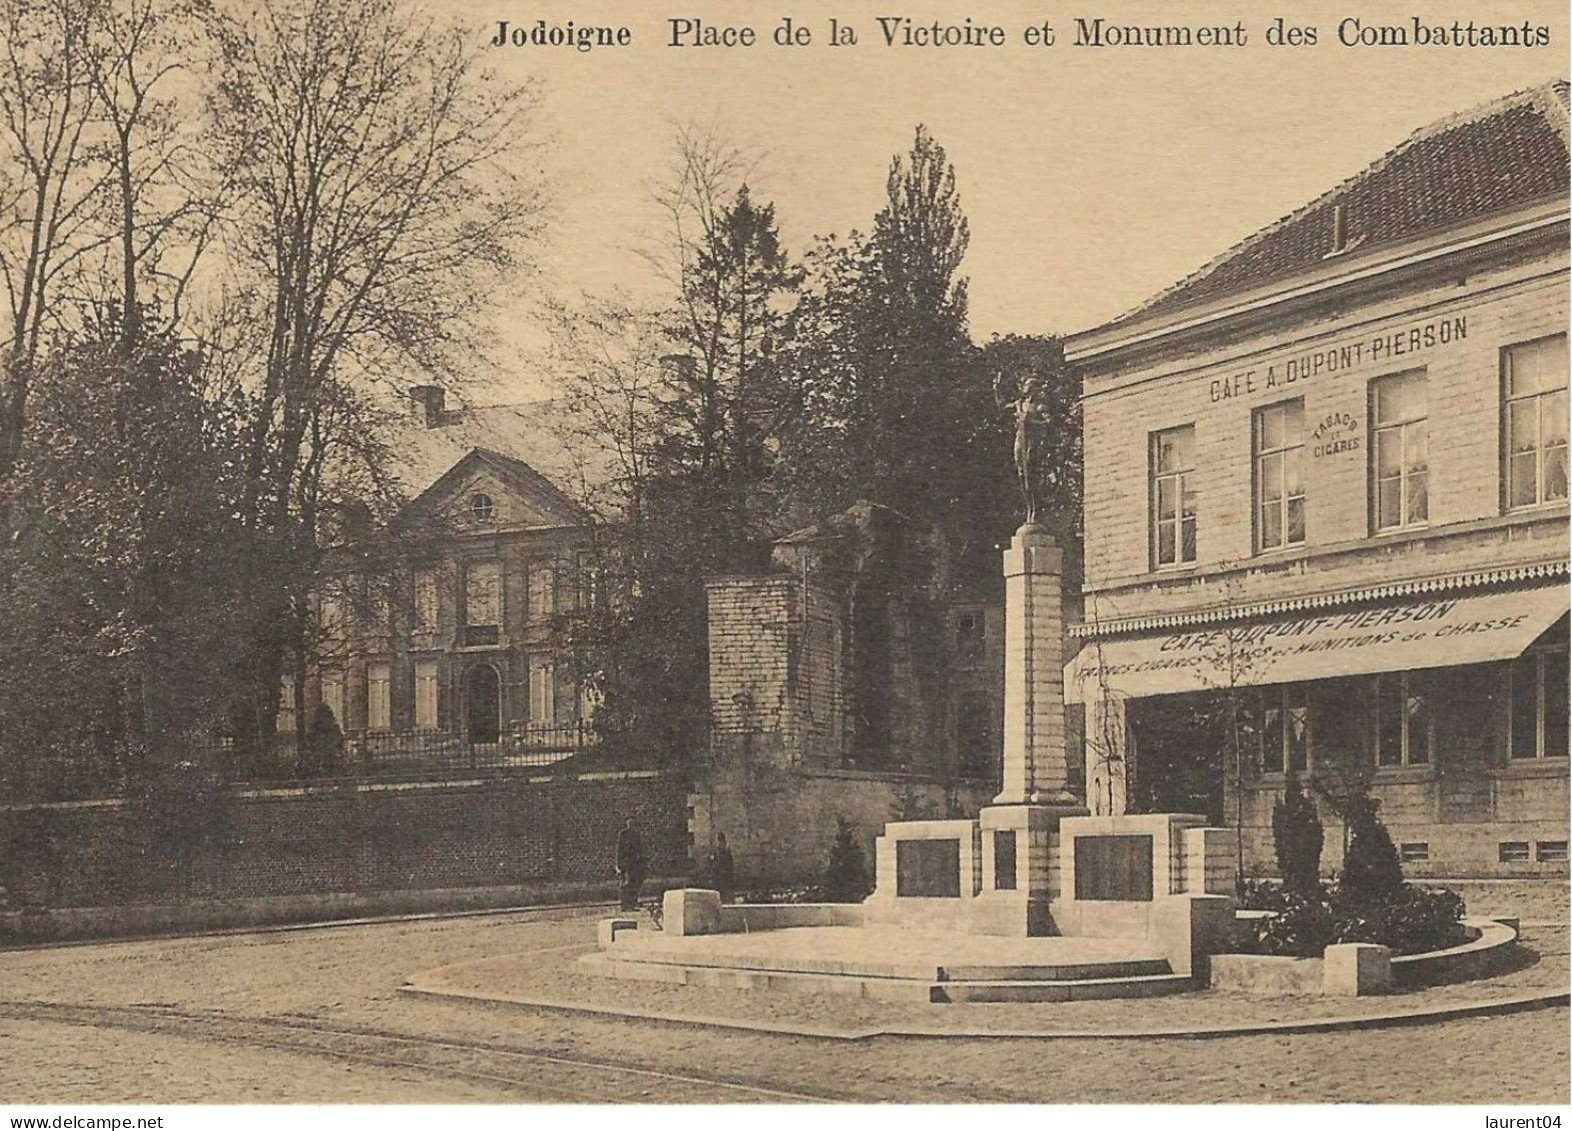 JODOIGNE. PLACE DE LA VICTOIRE ET MONUMENTS DES COMBATTANTS. - Geldenaken